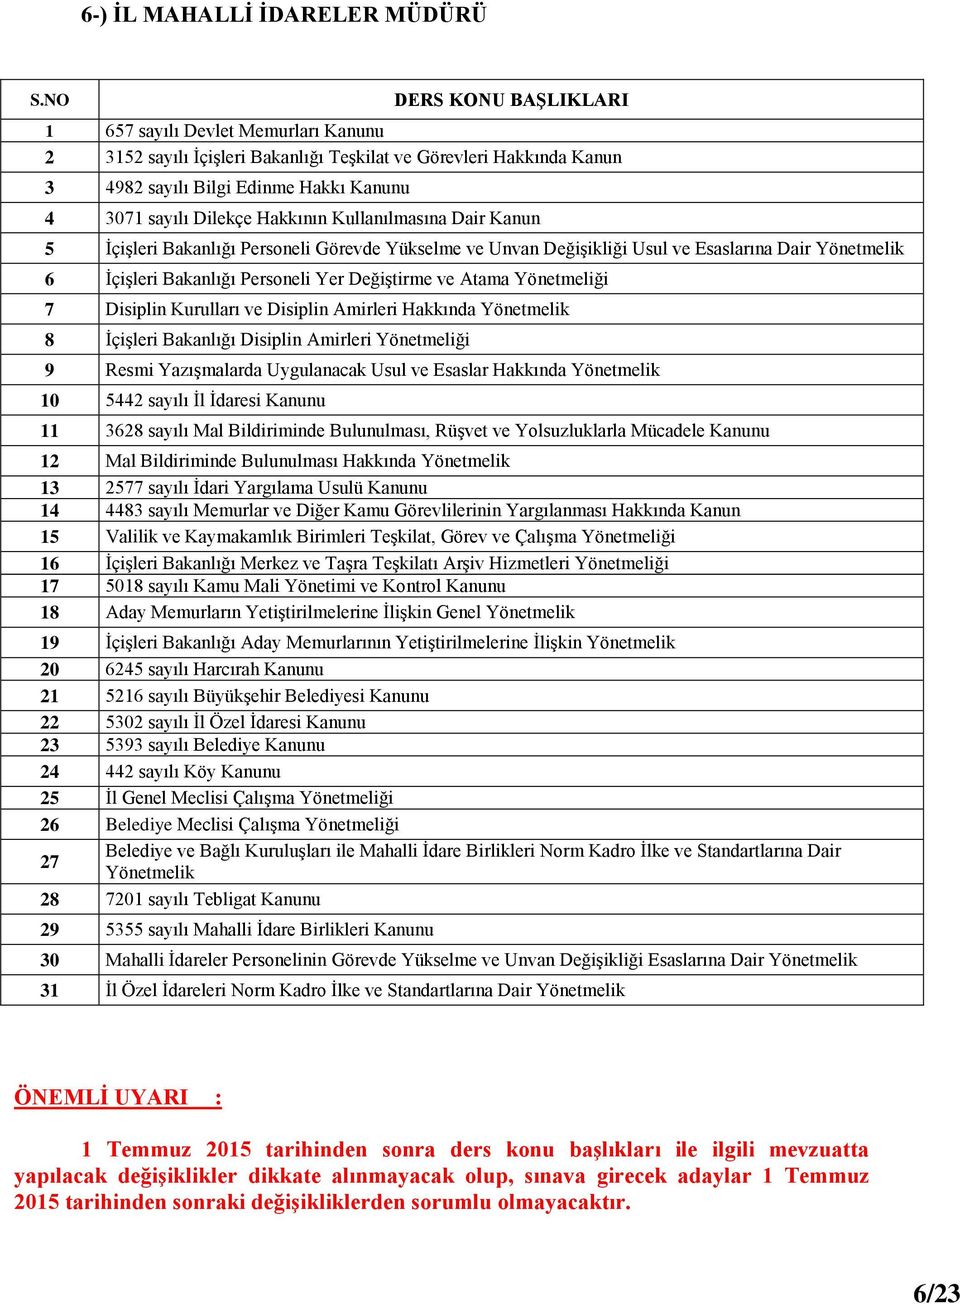 Yönetmeliği 16 İçişleri Bakanlığı Merkez ve Taşra Teşkilatı Arşiv Hizmetleri Yönetmeliği 17 5018 sayılı Kamu Mali Yönetimi ve Kontrol Kanunu 18 Aday Memurların Yetiştirilmelerine İlişkin Genel